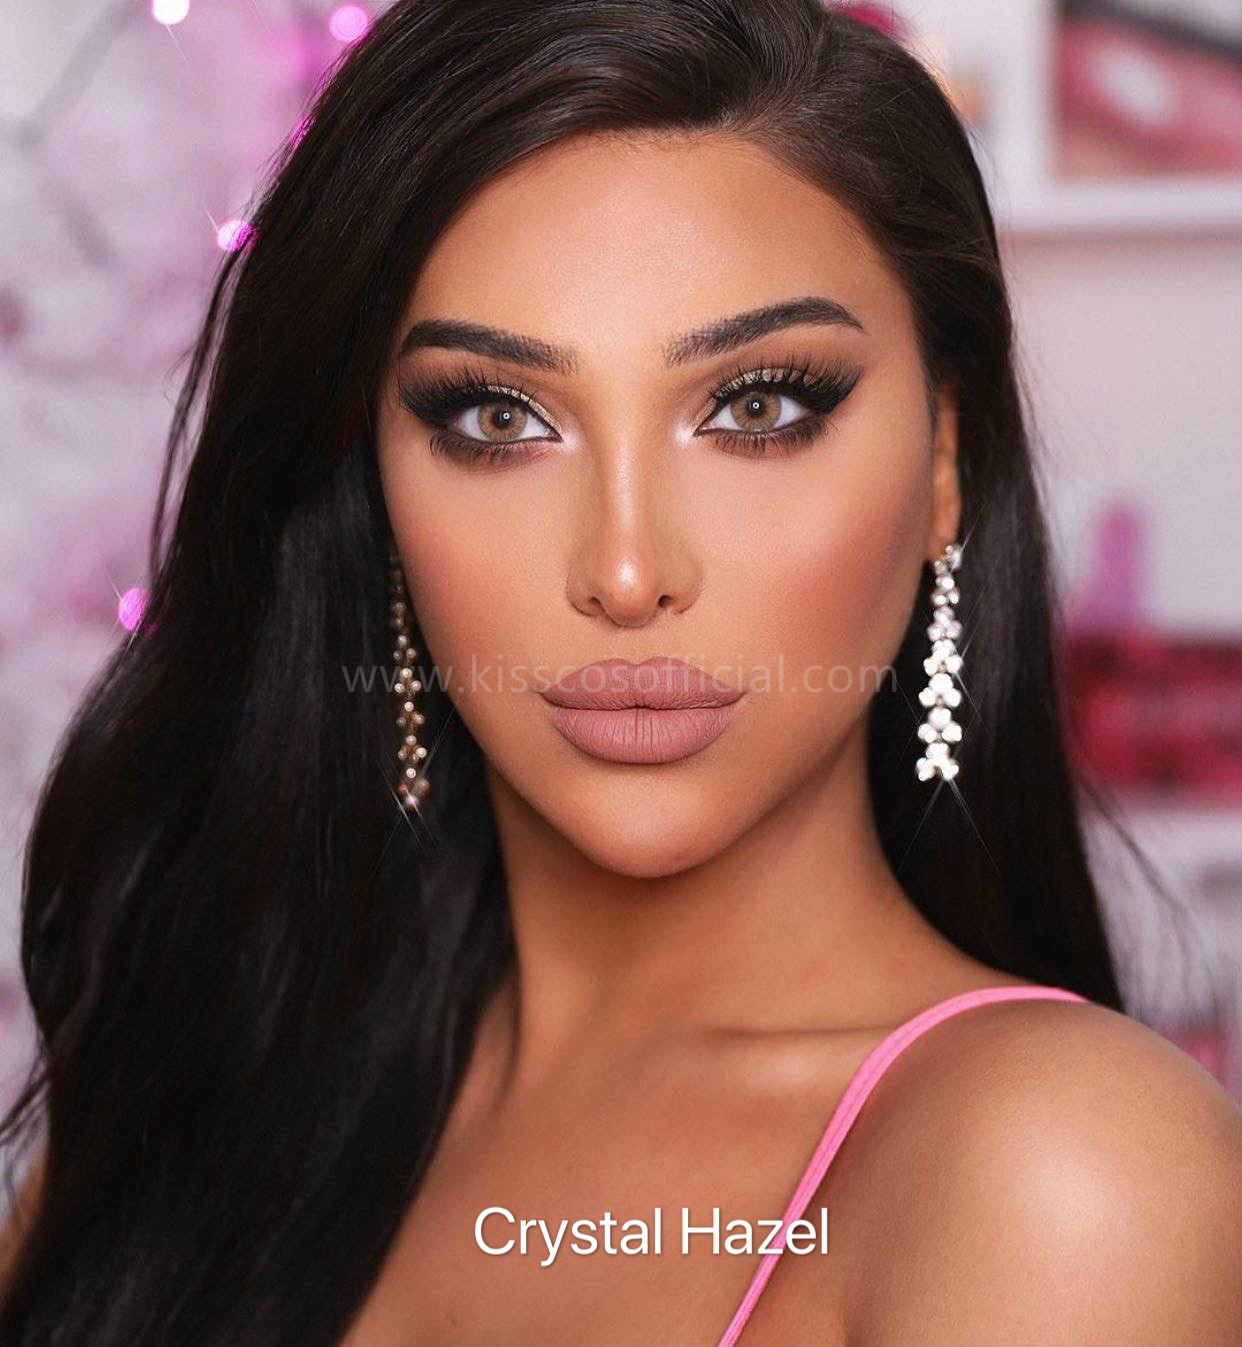 Crystal Hazel Color Contact Lens – Kiss Cosmetics